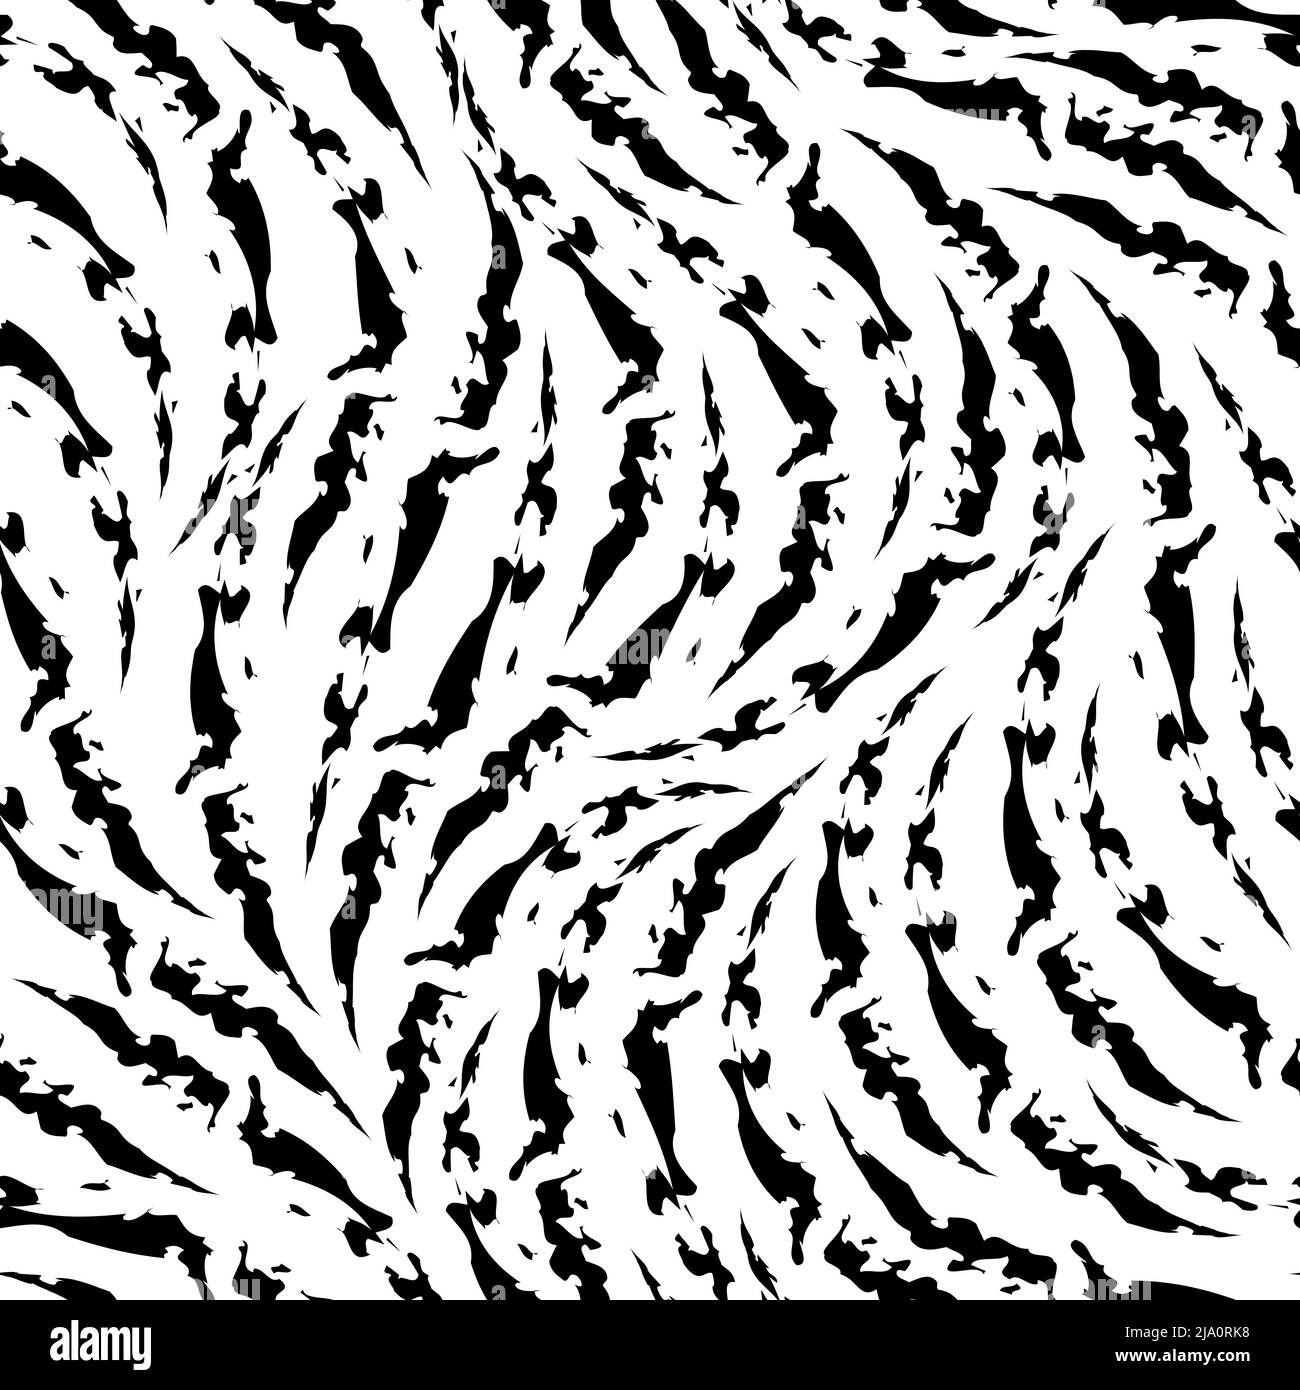 Stock nahtlose schwarz und weiß Vektor Zebra Hautmuster.Abstrakt zerrissen Streifen schwarz nahtlose Textur. Stock Vektor